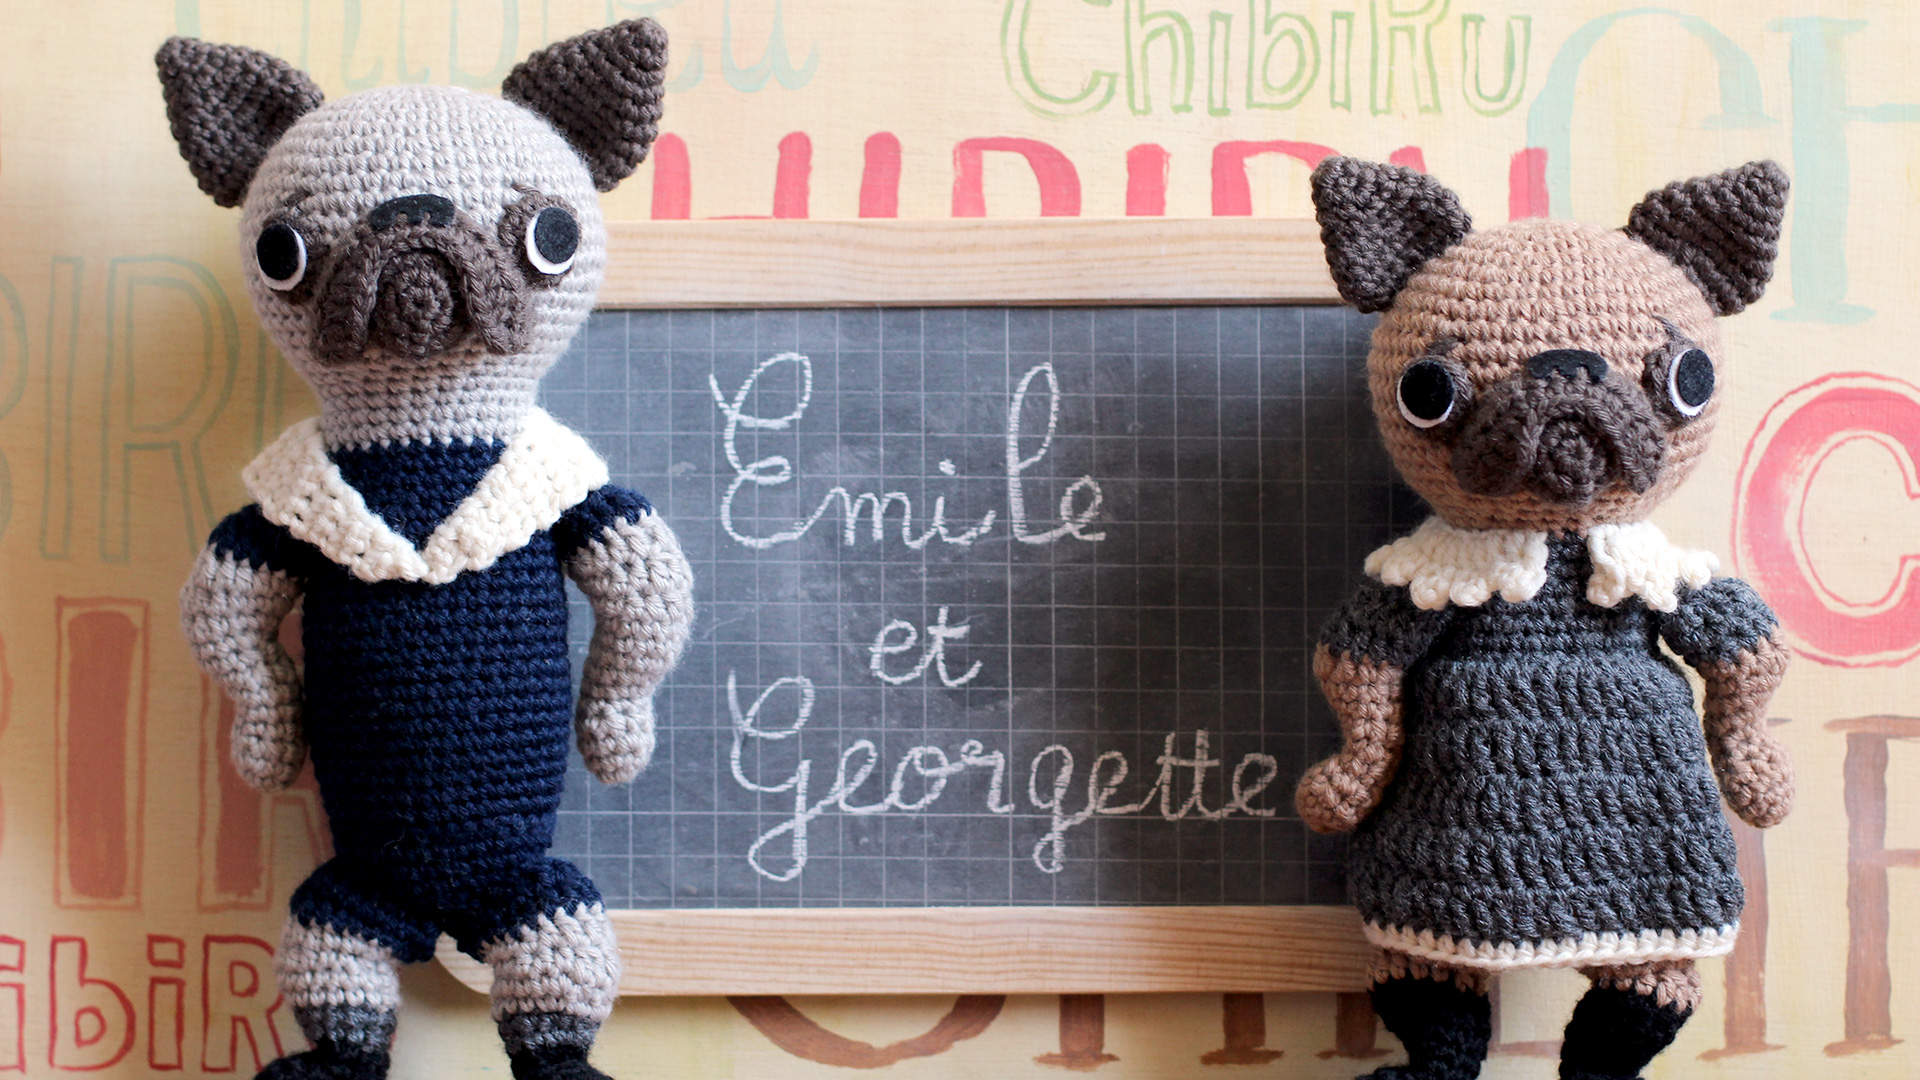 Émile & Georgette